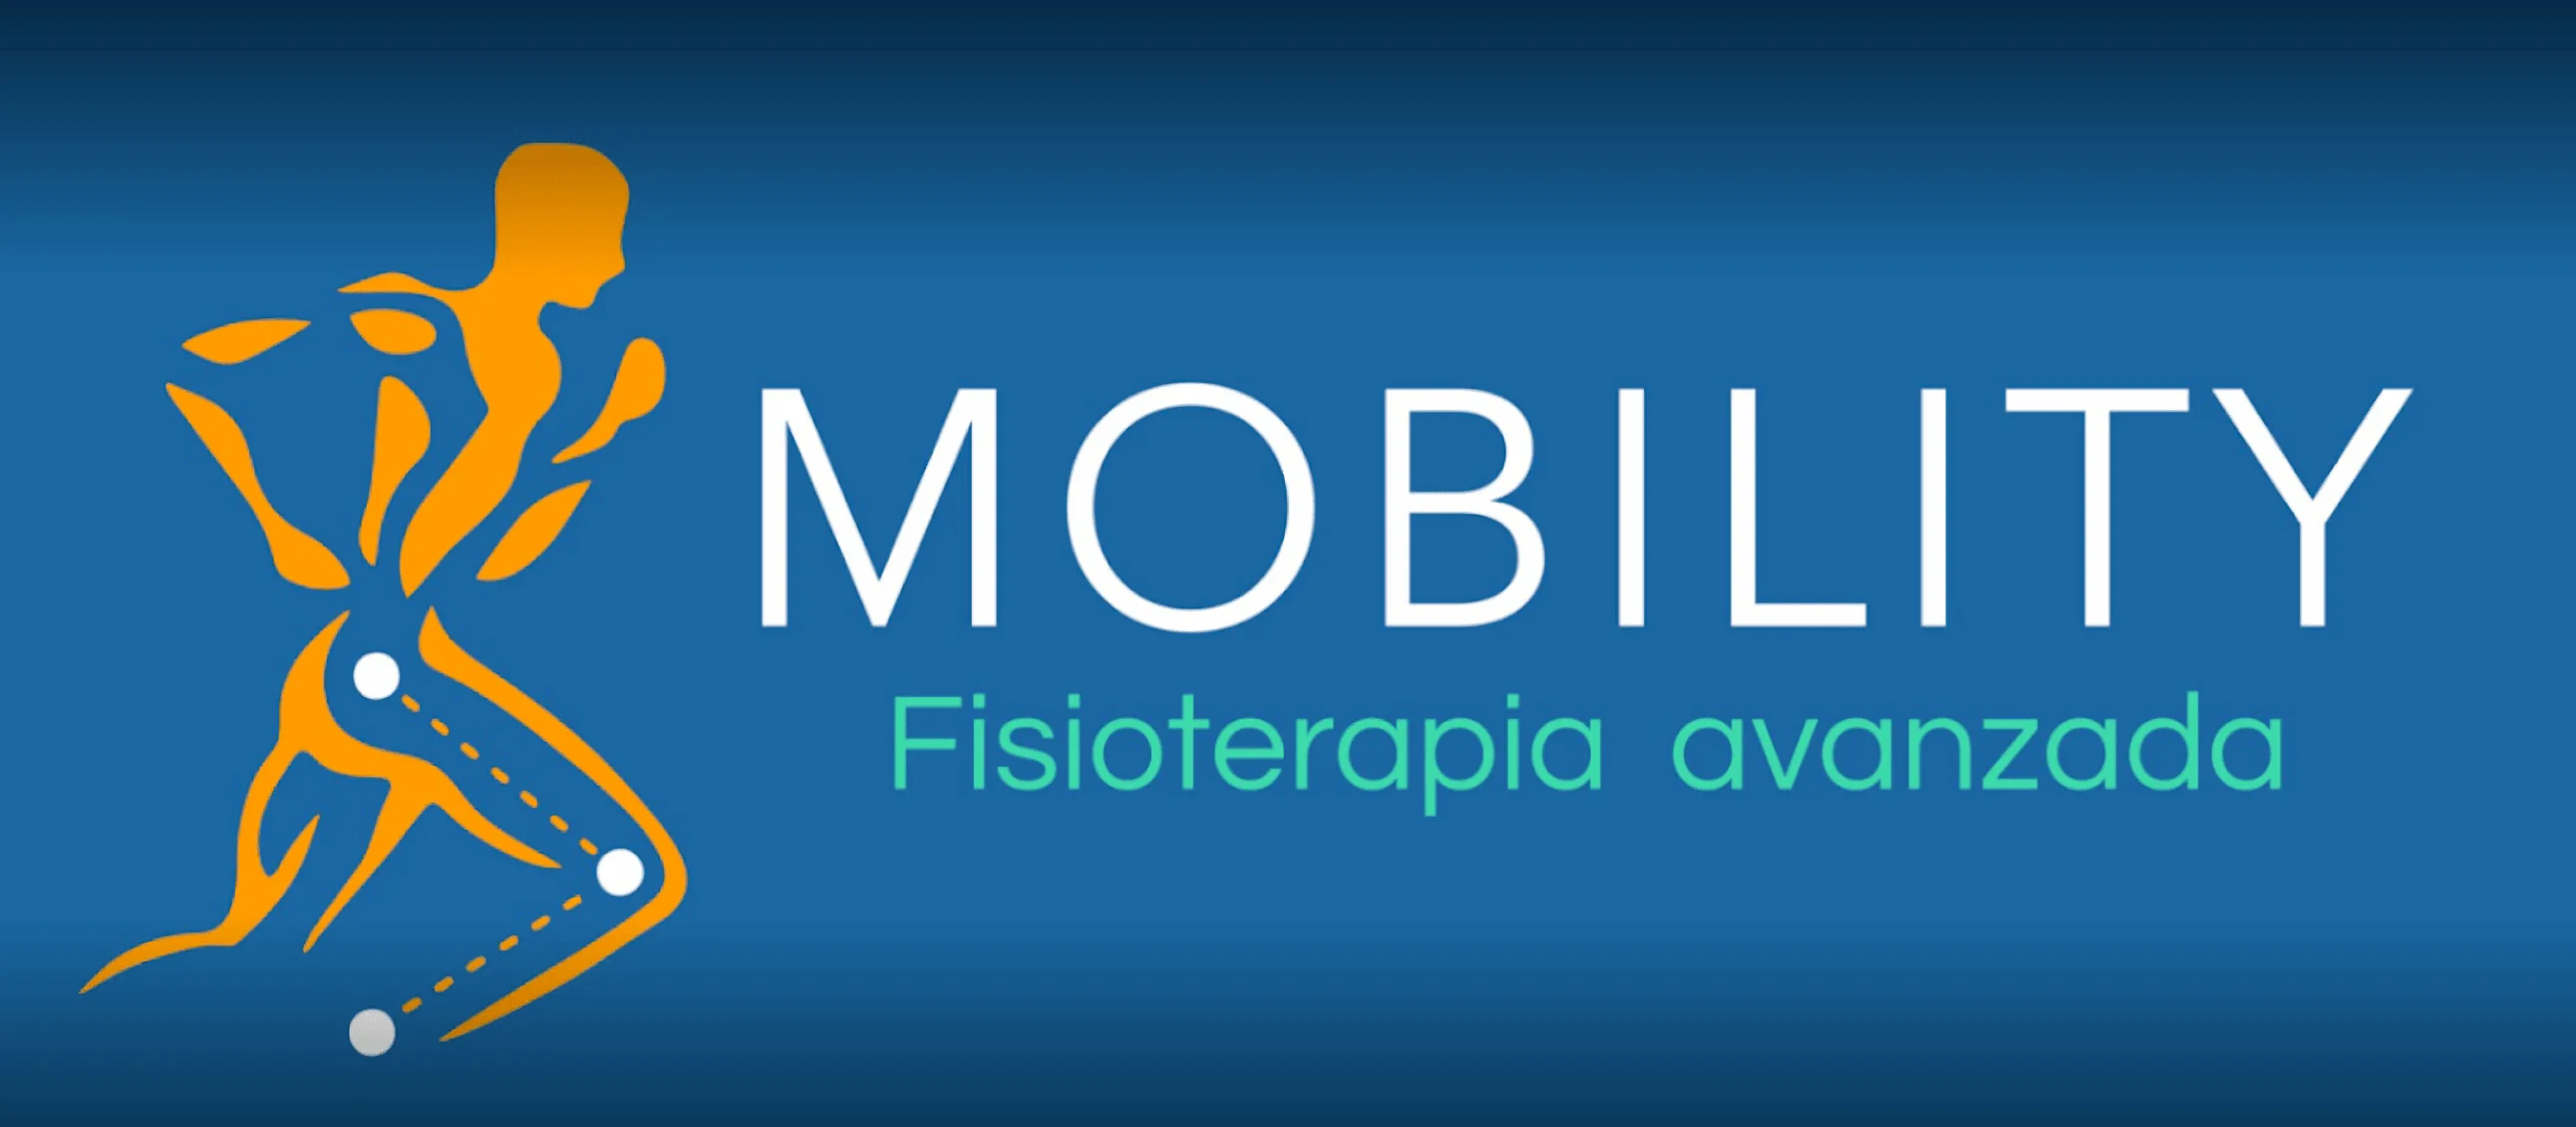 Mobility Fisioterapia Avanzada-1527